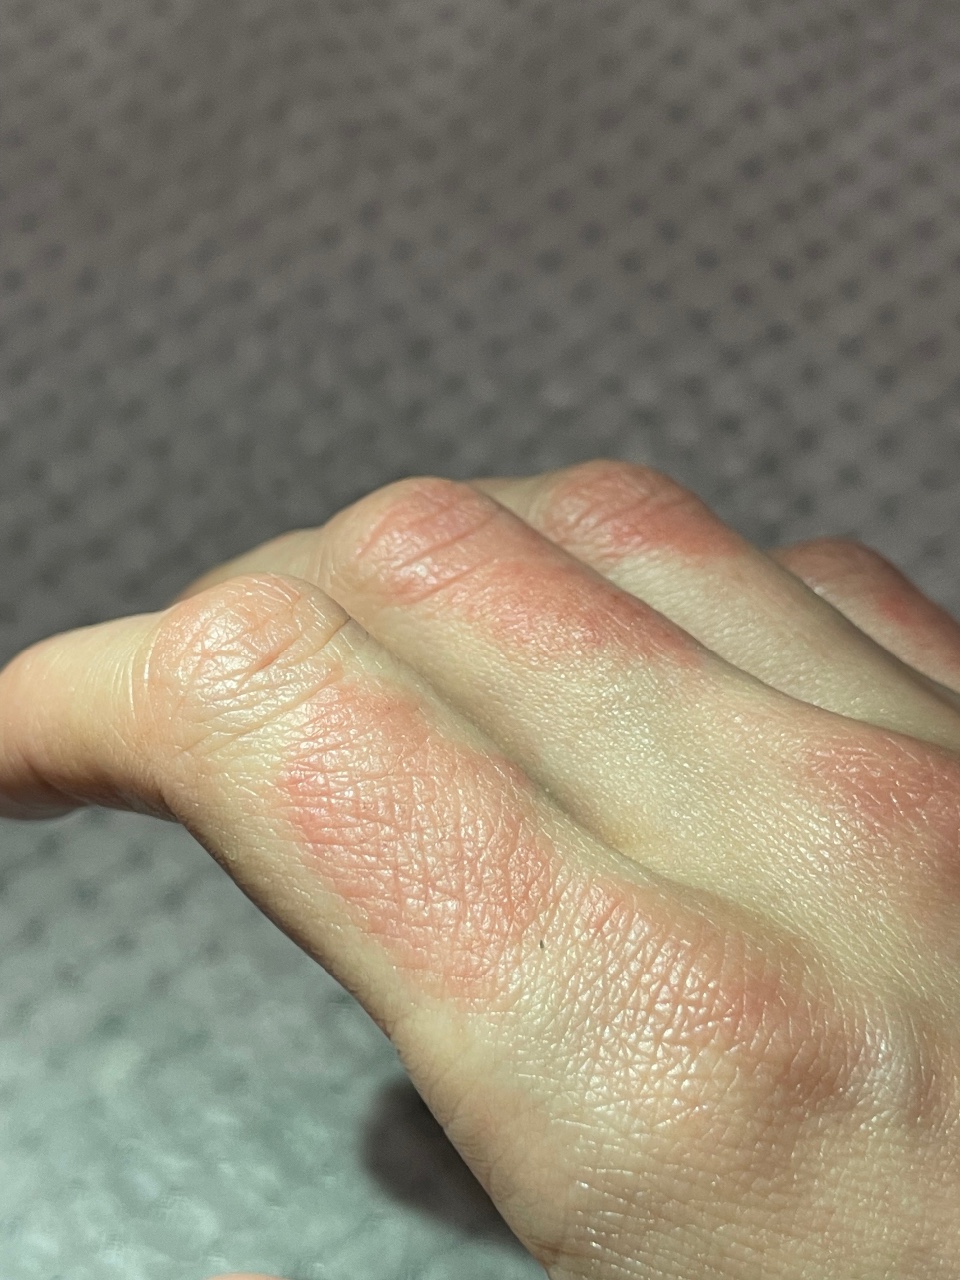 грибок между пальцев руки фото